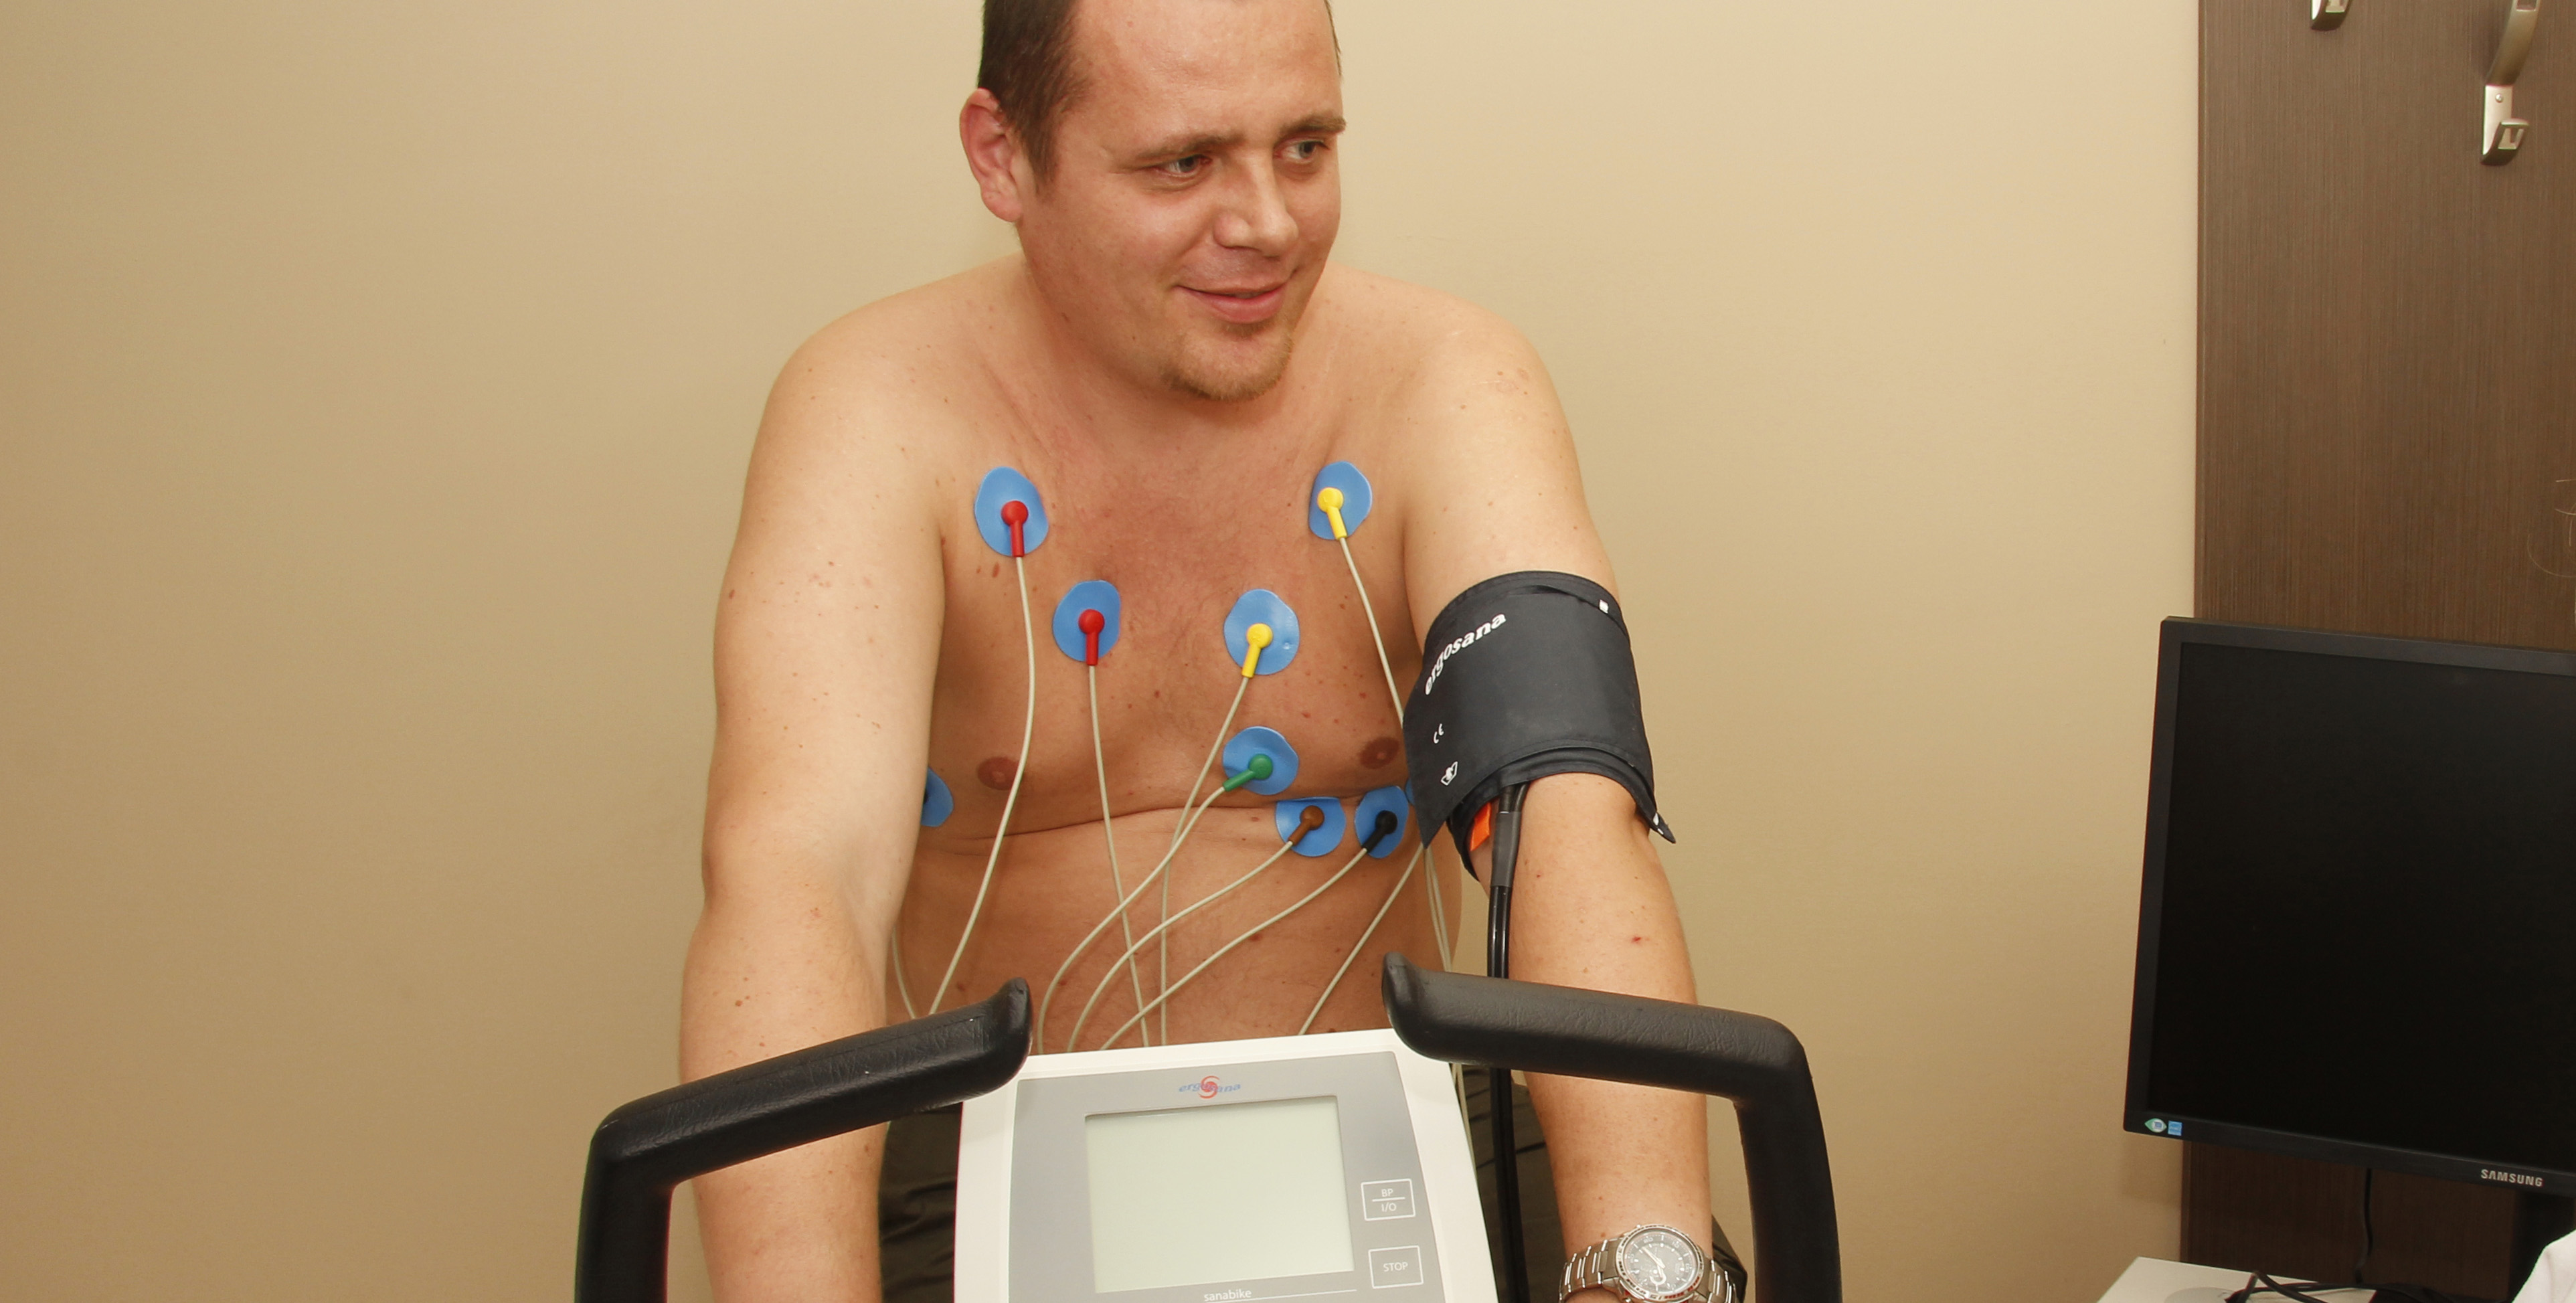 Hogyan előzhetjük meg a magas vérnyomás (hipertónia) kialakulását? | Doktor24 Egészségközpont